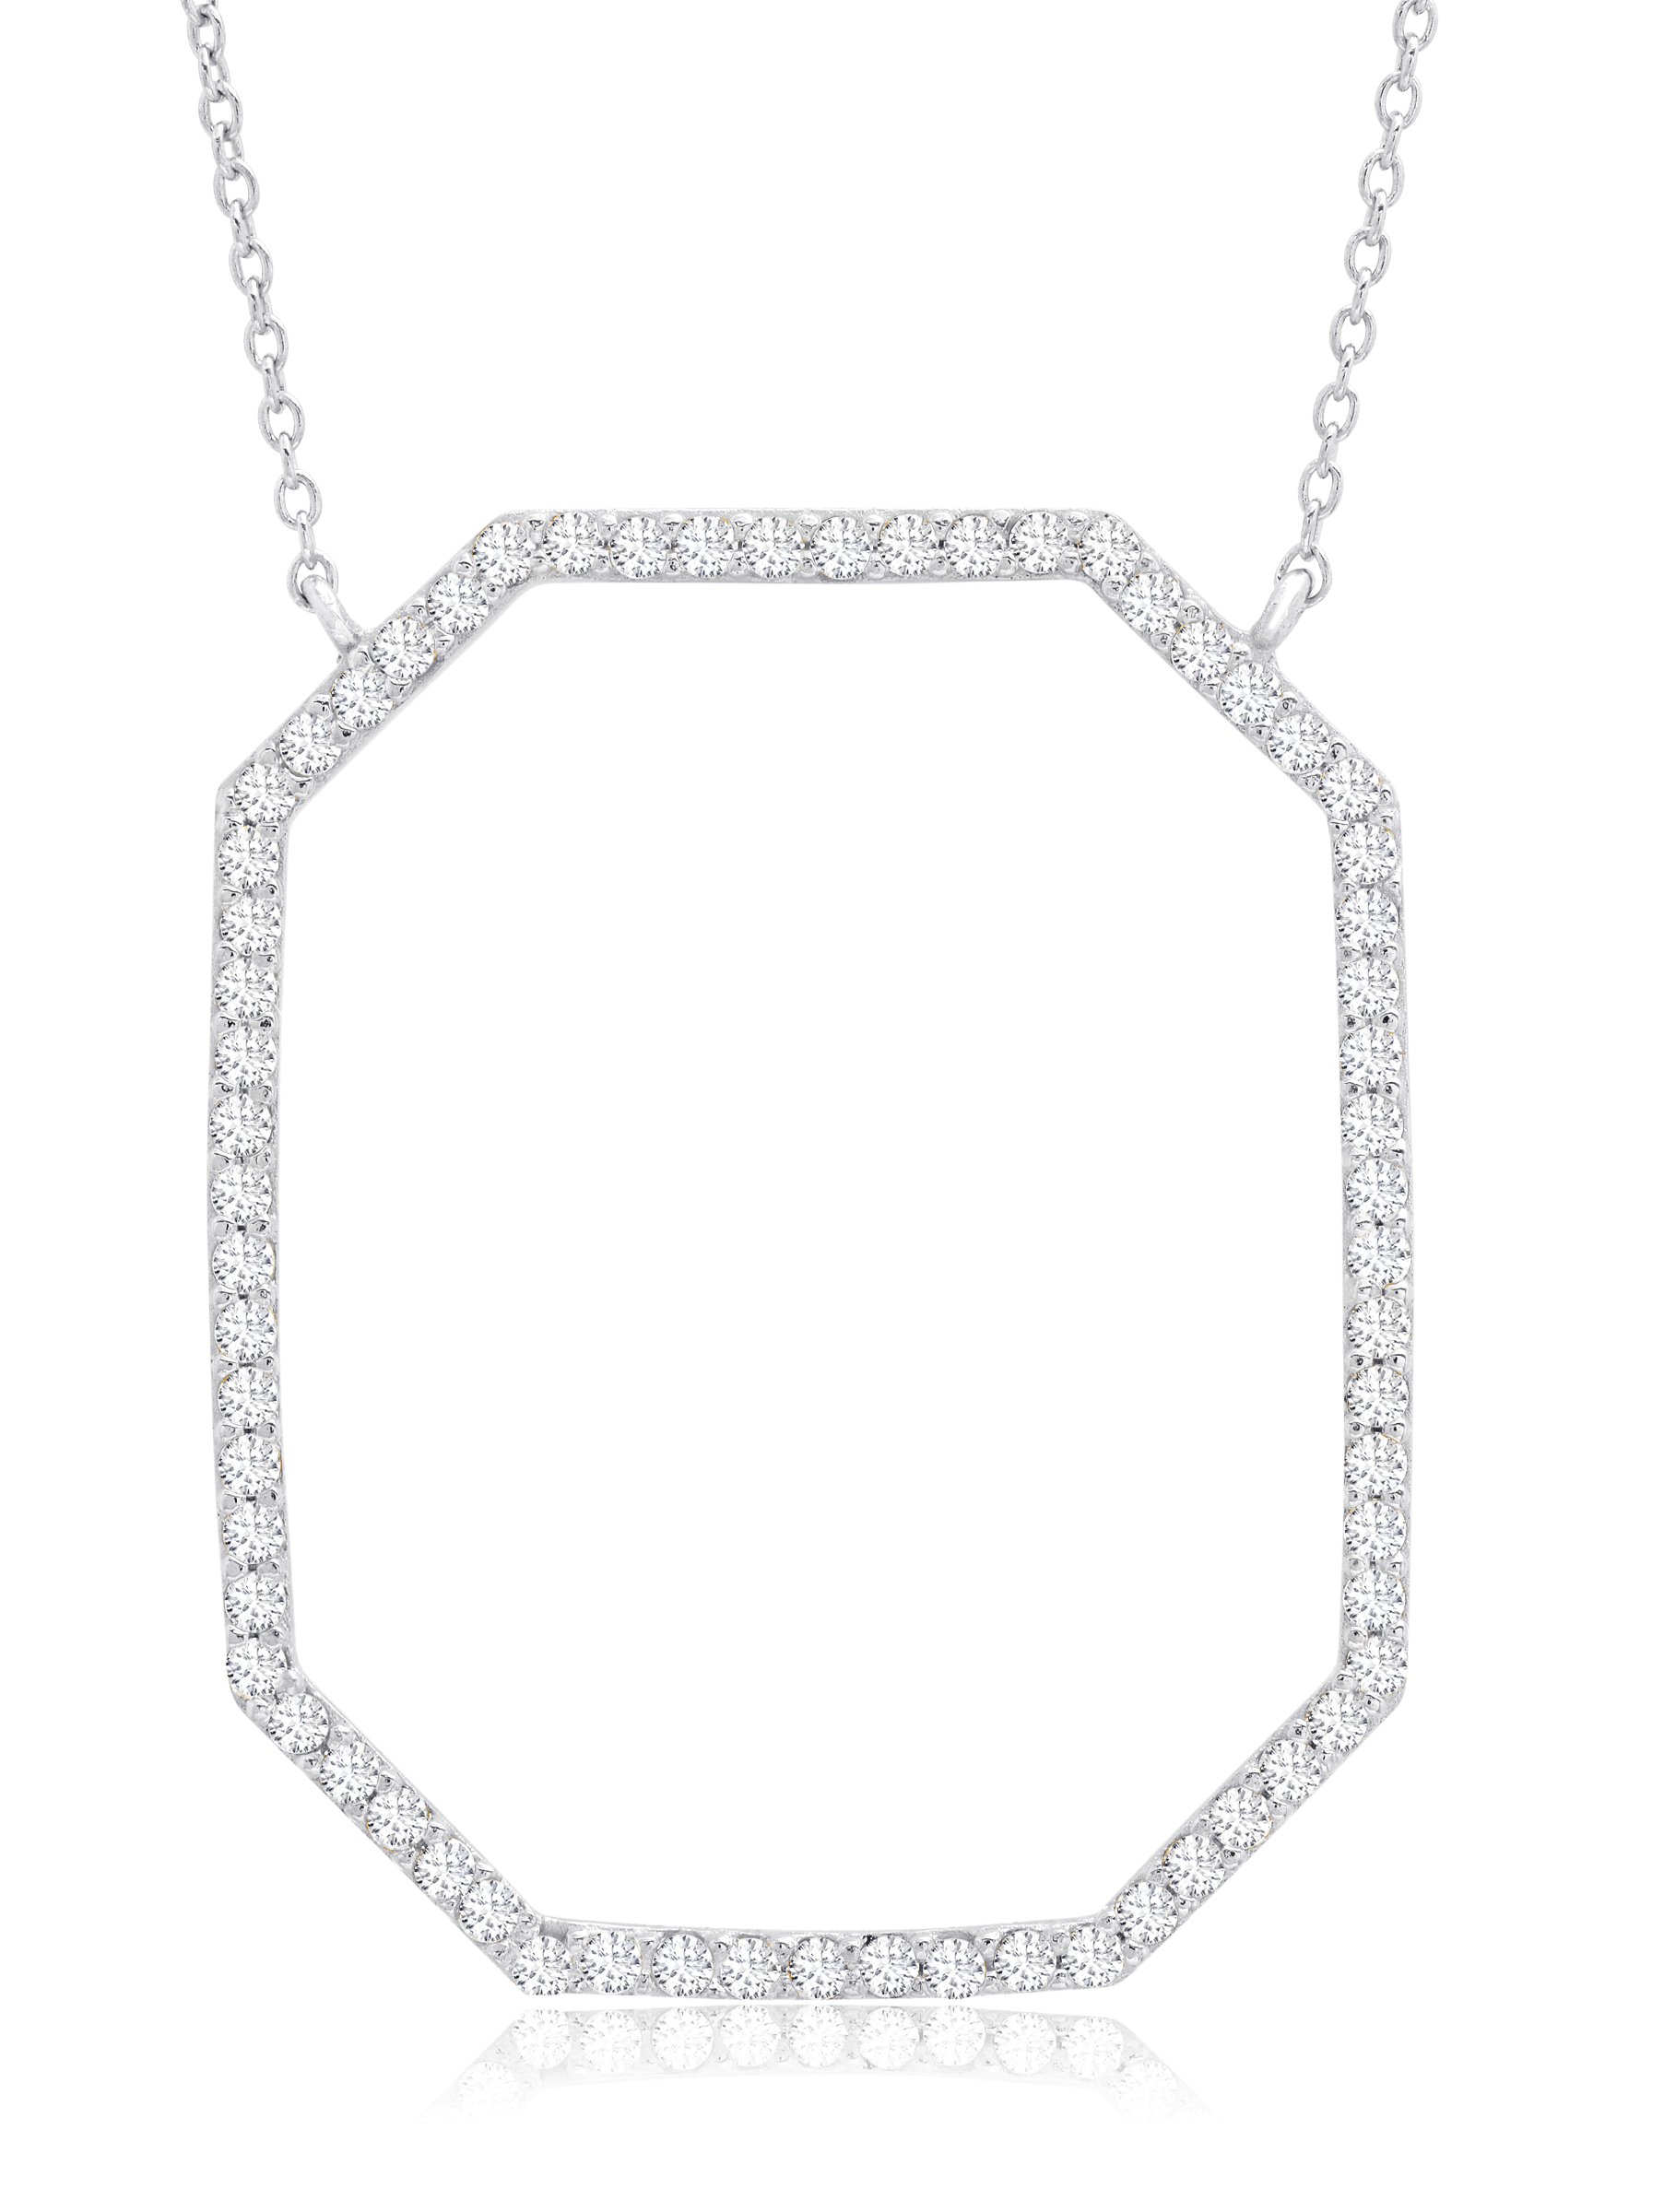 Crislu Jewelry Crislu Open Octagon Pave Necklace In Pure Platinum